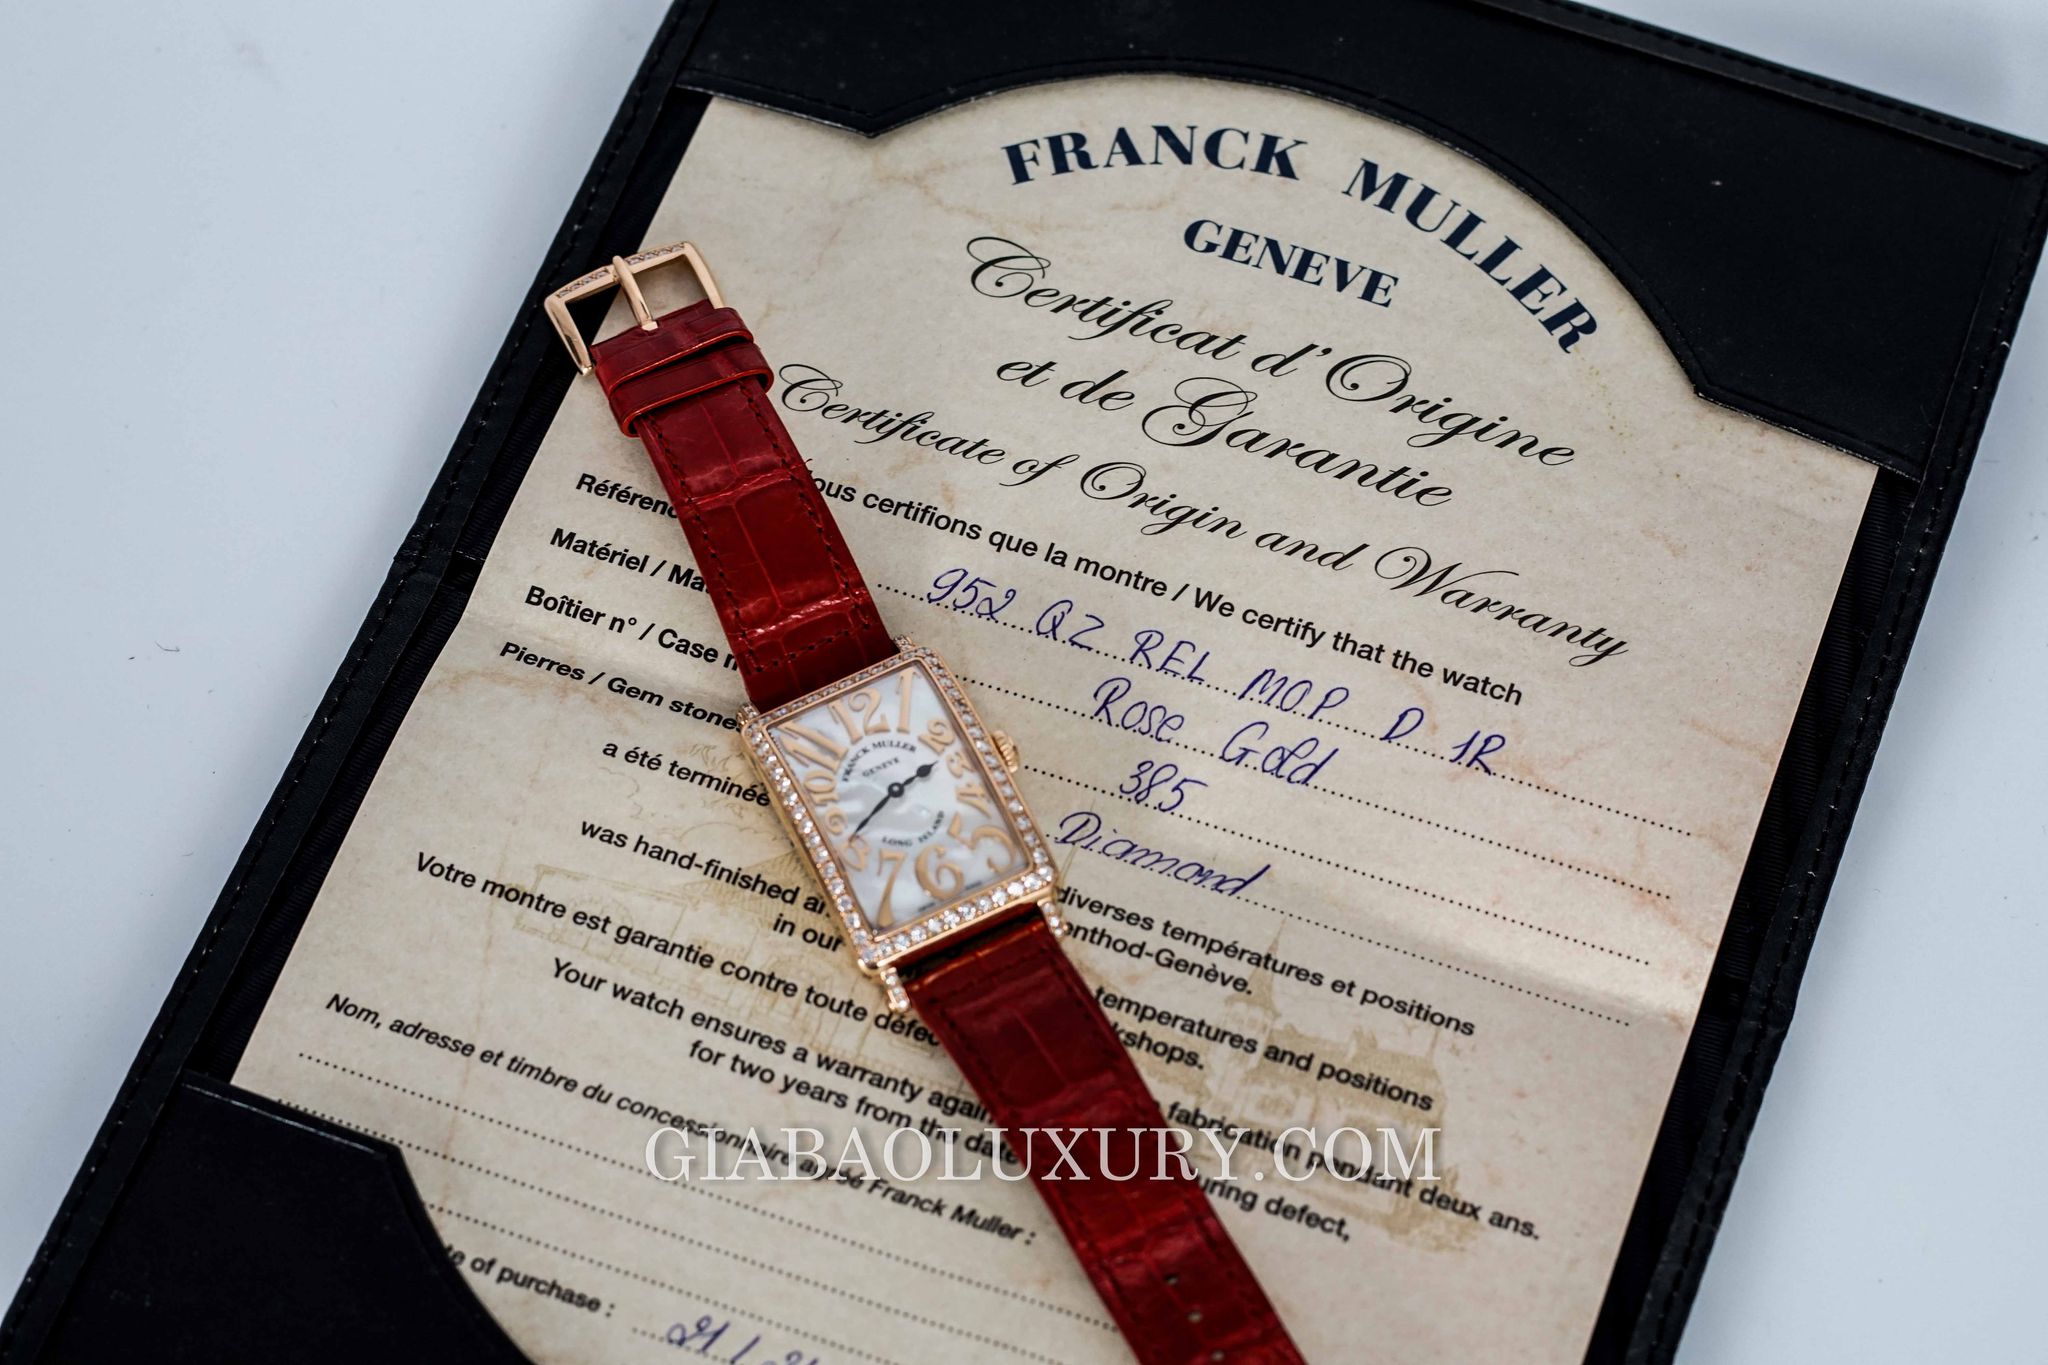 Gia Bảo Luxury chỉ nhận giao dịch với mặt hàng đồng hồ Franck Muller Long Island chính hãng, và nói “Không” với đồng hồ fake, đồng hồ giả